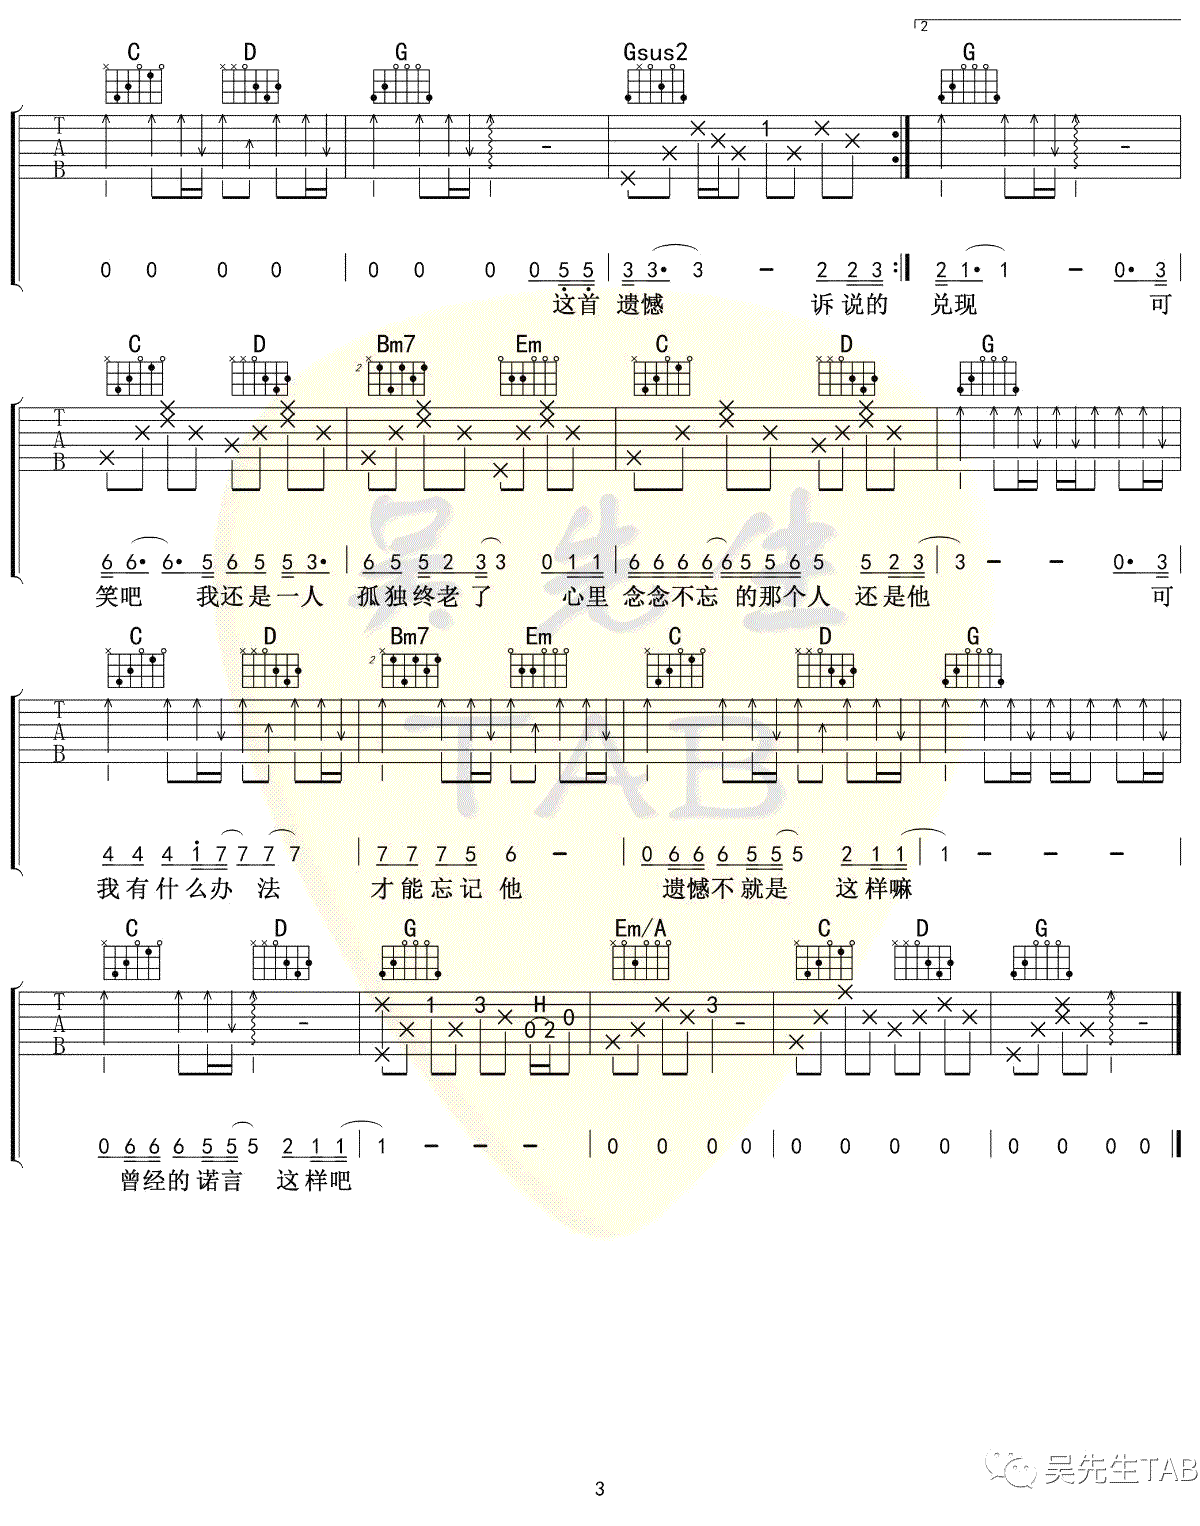 王佳杨《遗憾》吉他谱(G调)-Guitar Music Score